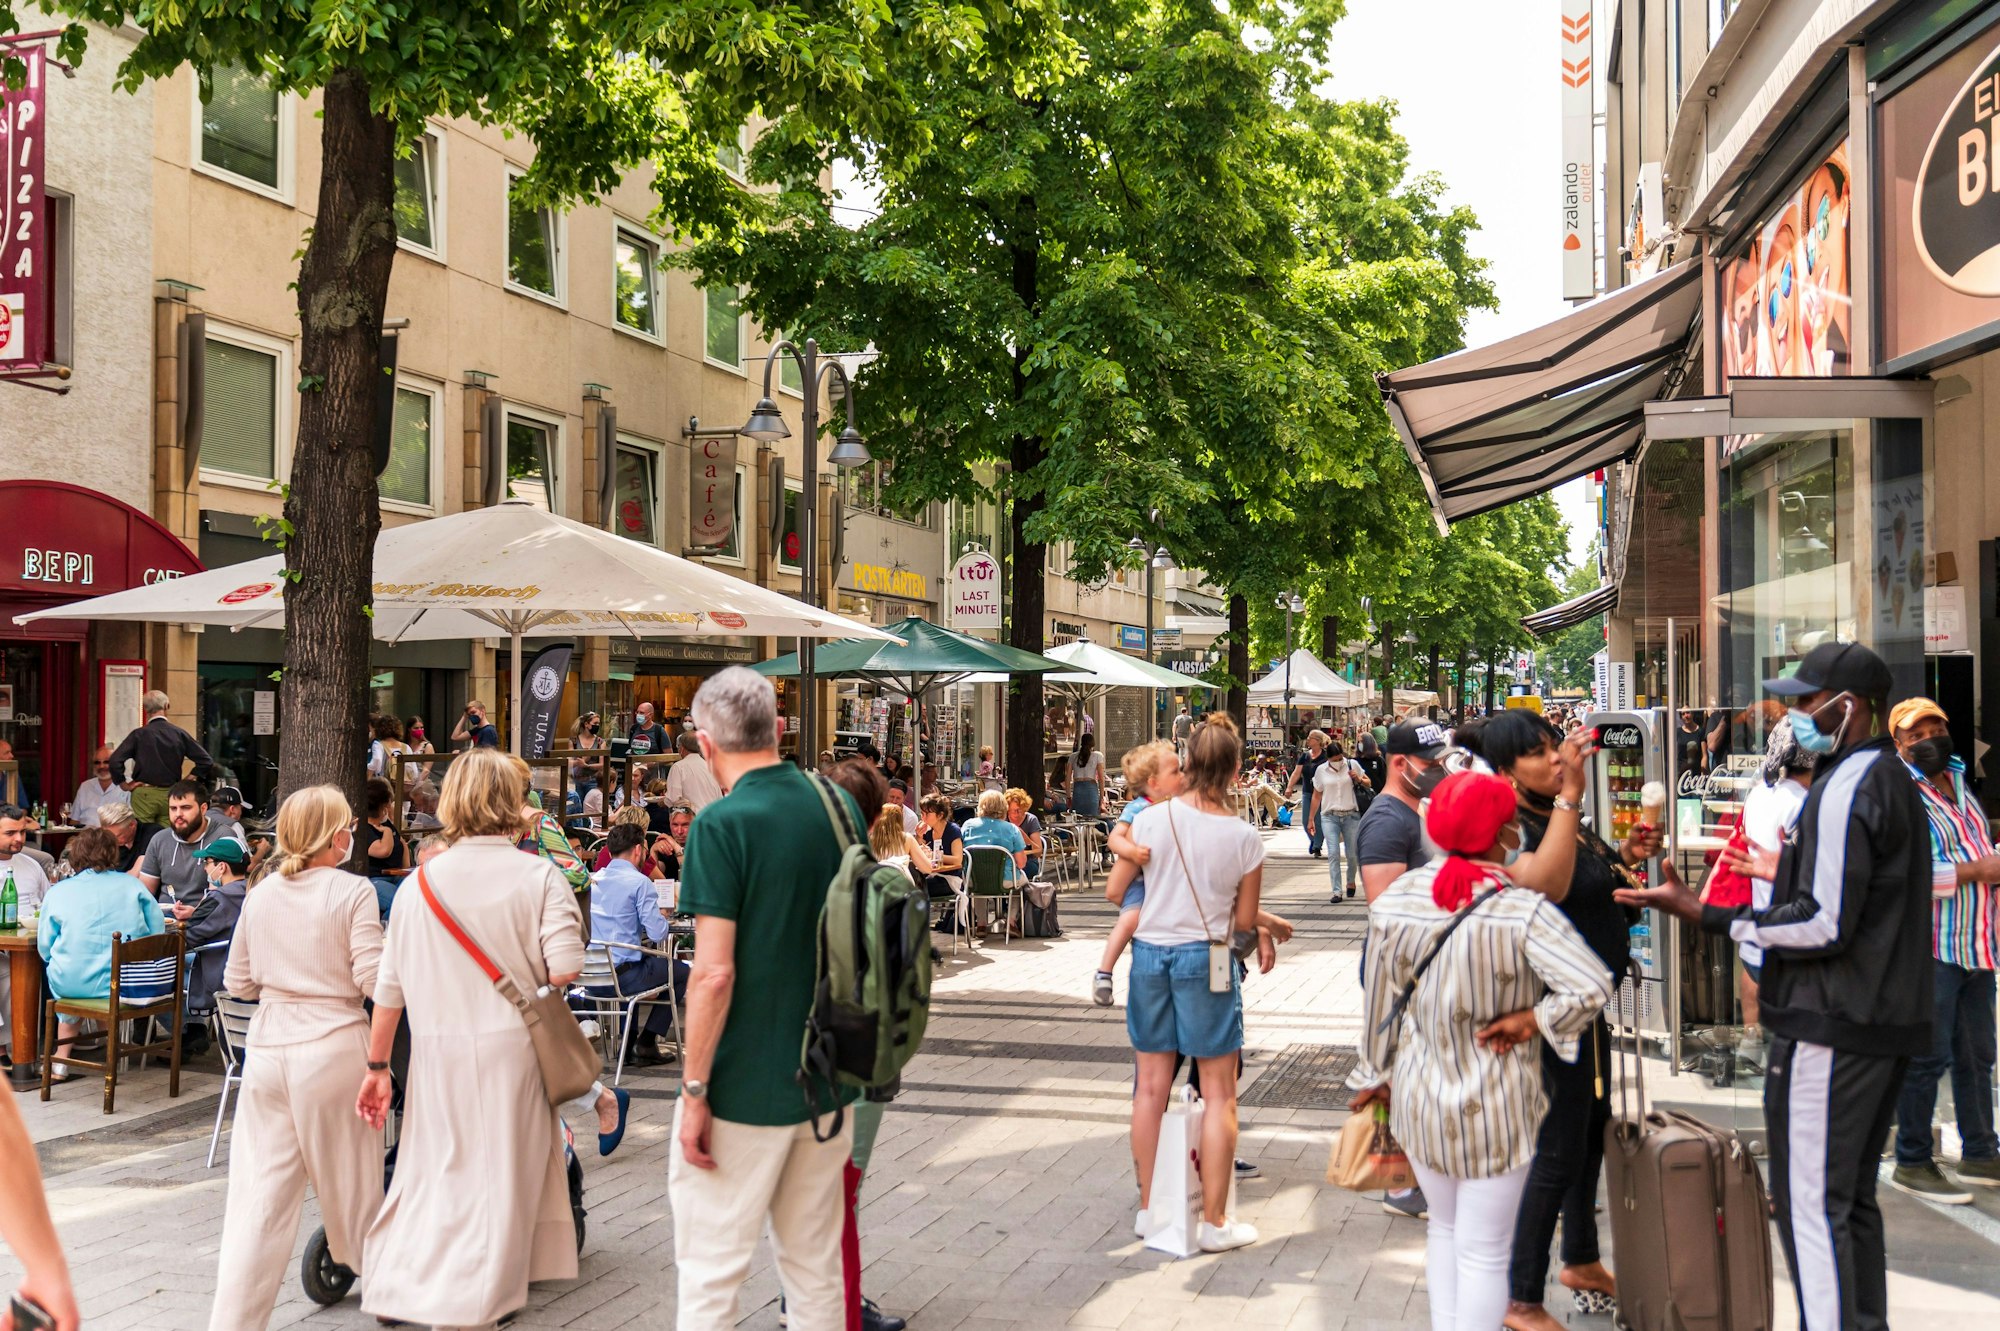 Menschen sitzen in Restaurants oder gehen durch die Breite Straße in Köln.